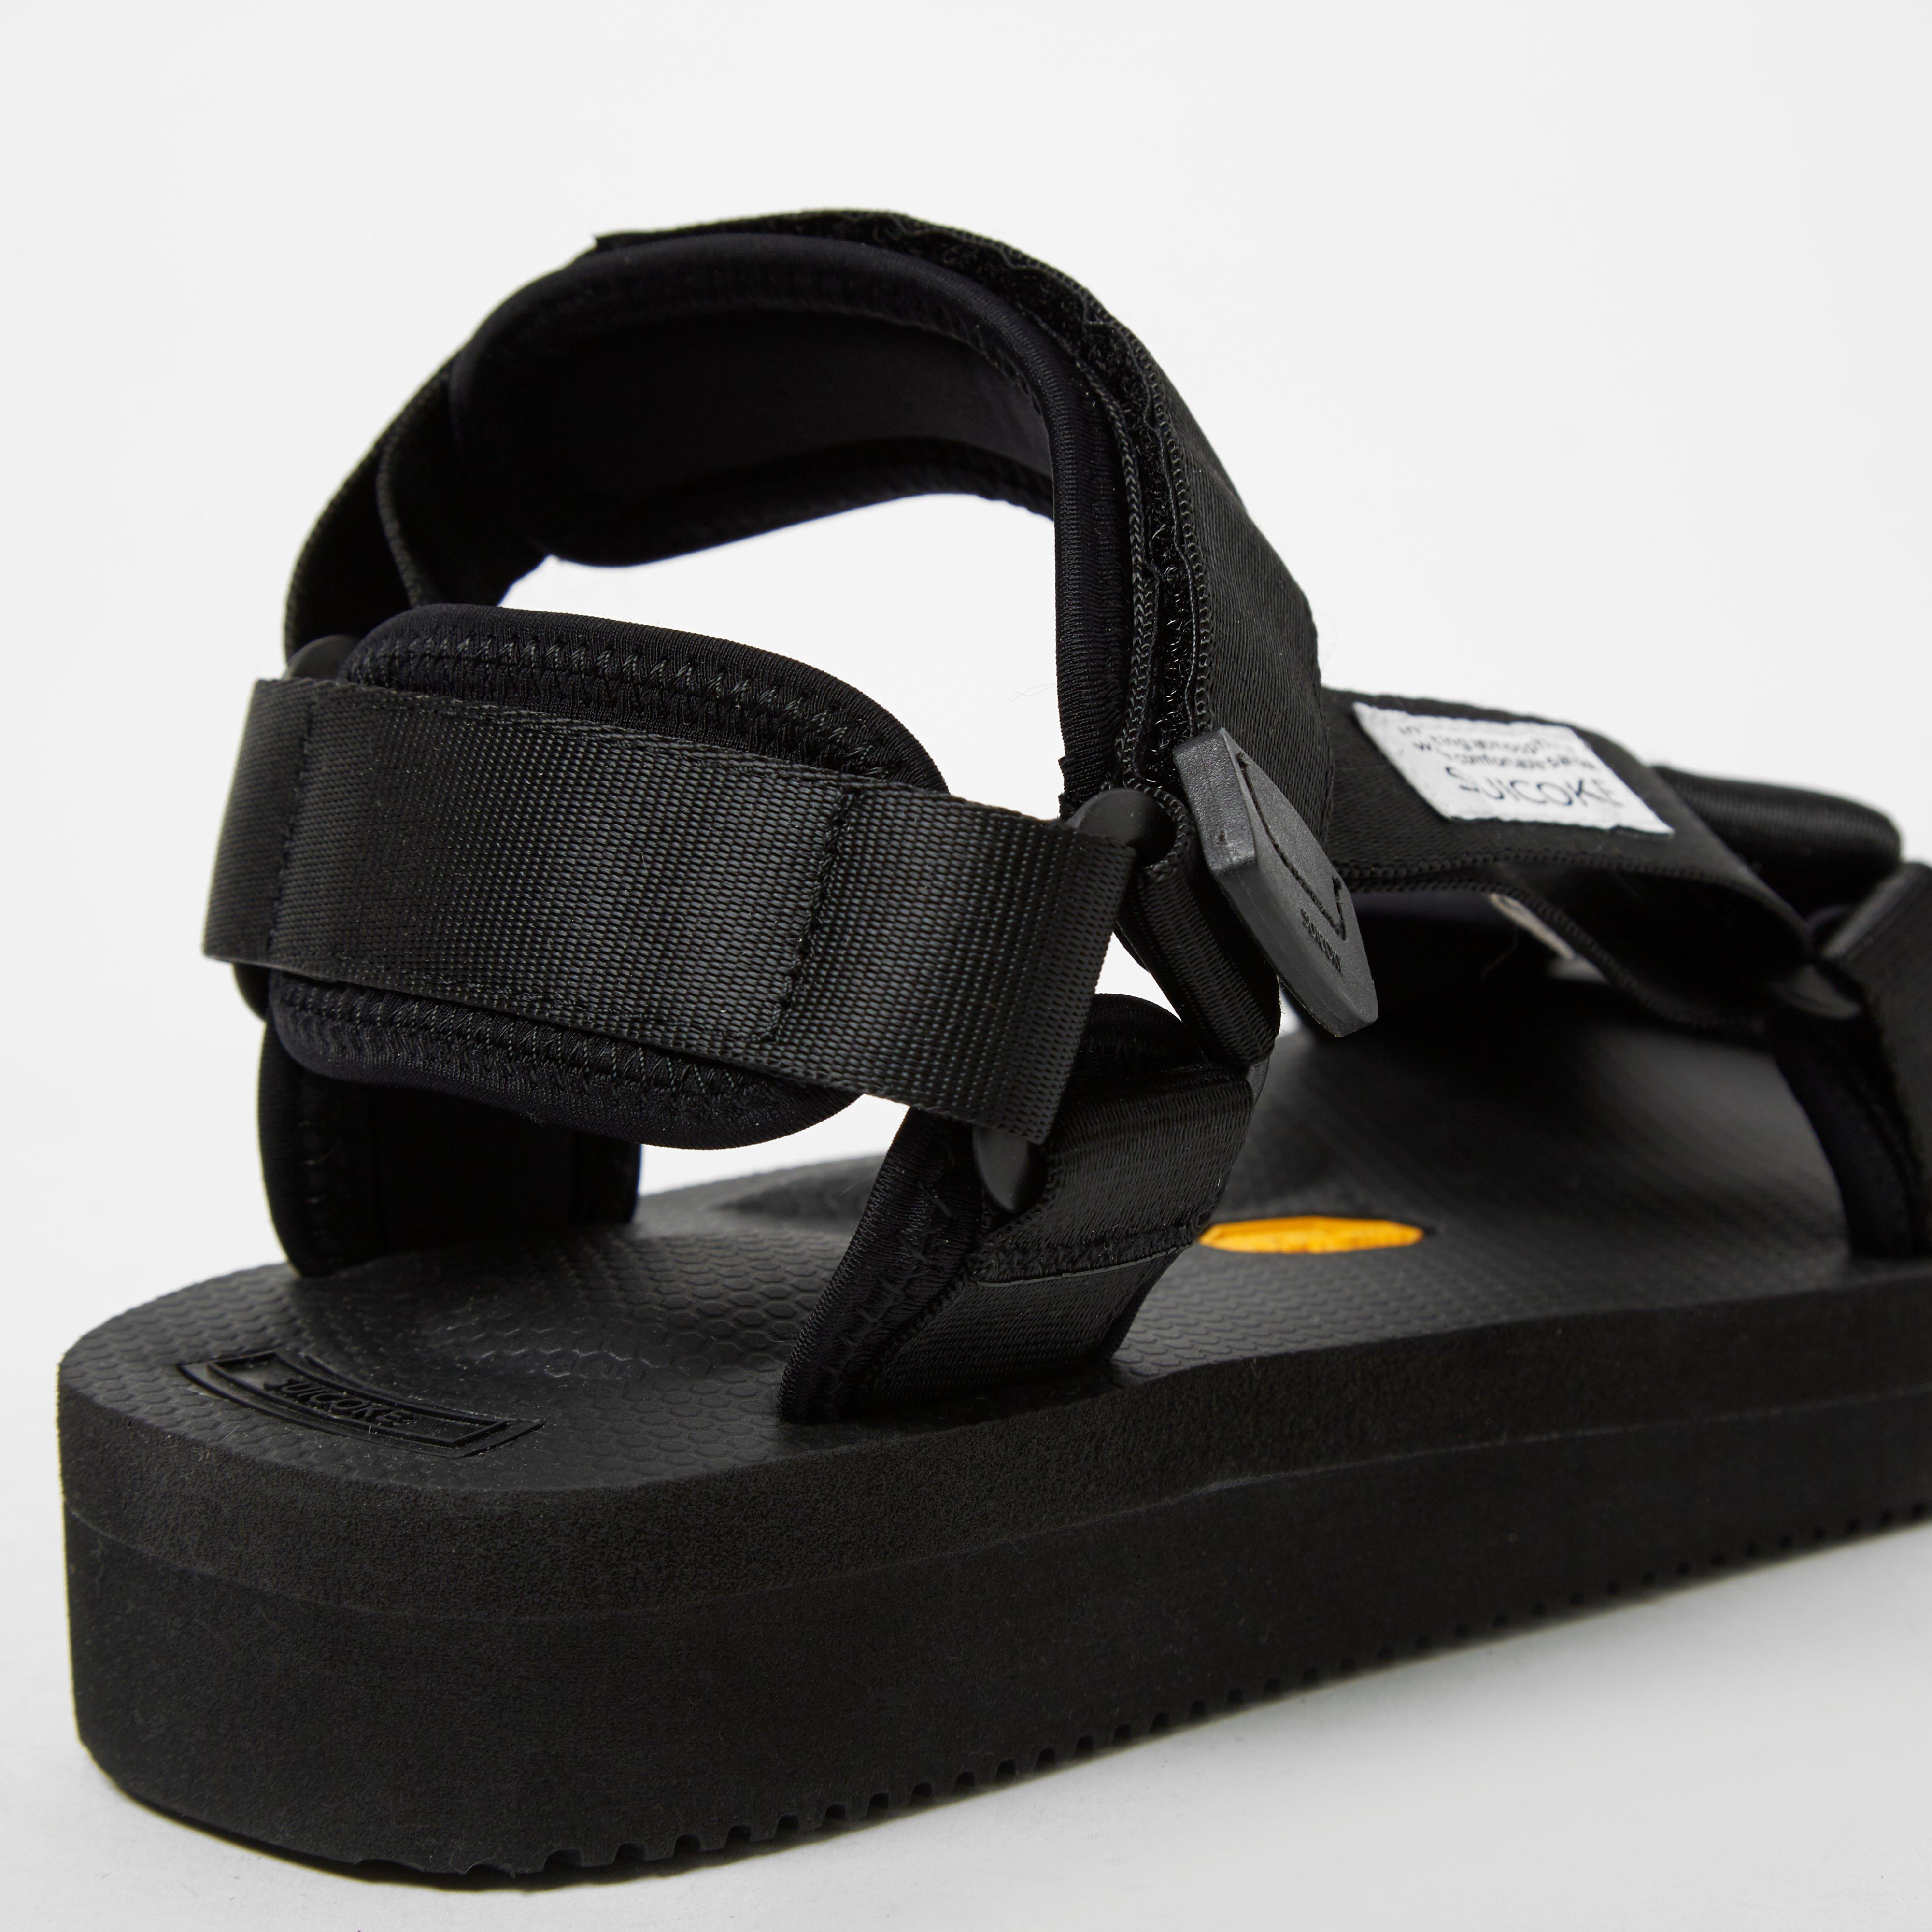 Lyst - Suicoke Depa-v2 Sandals in Black